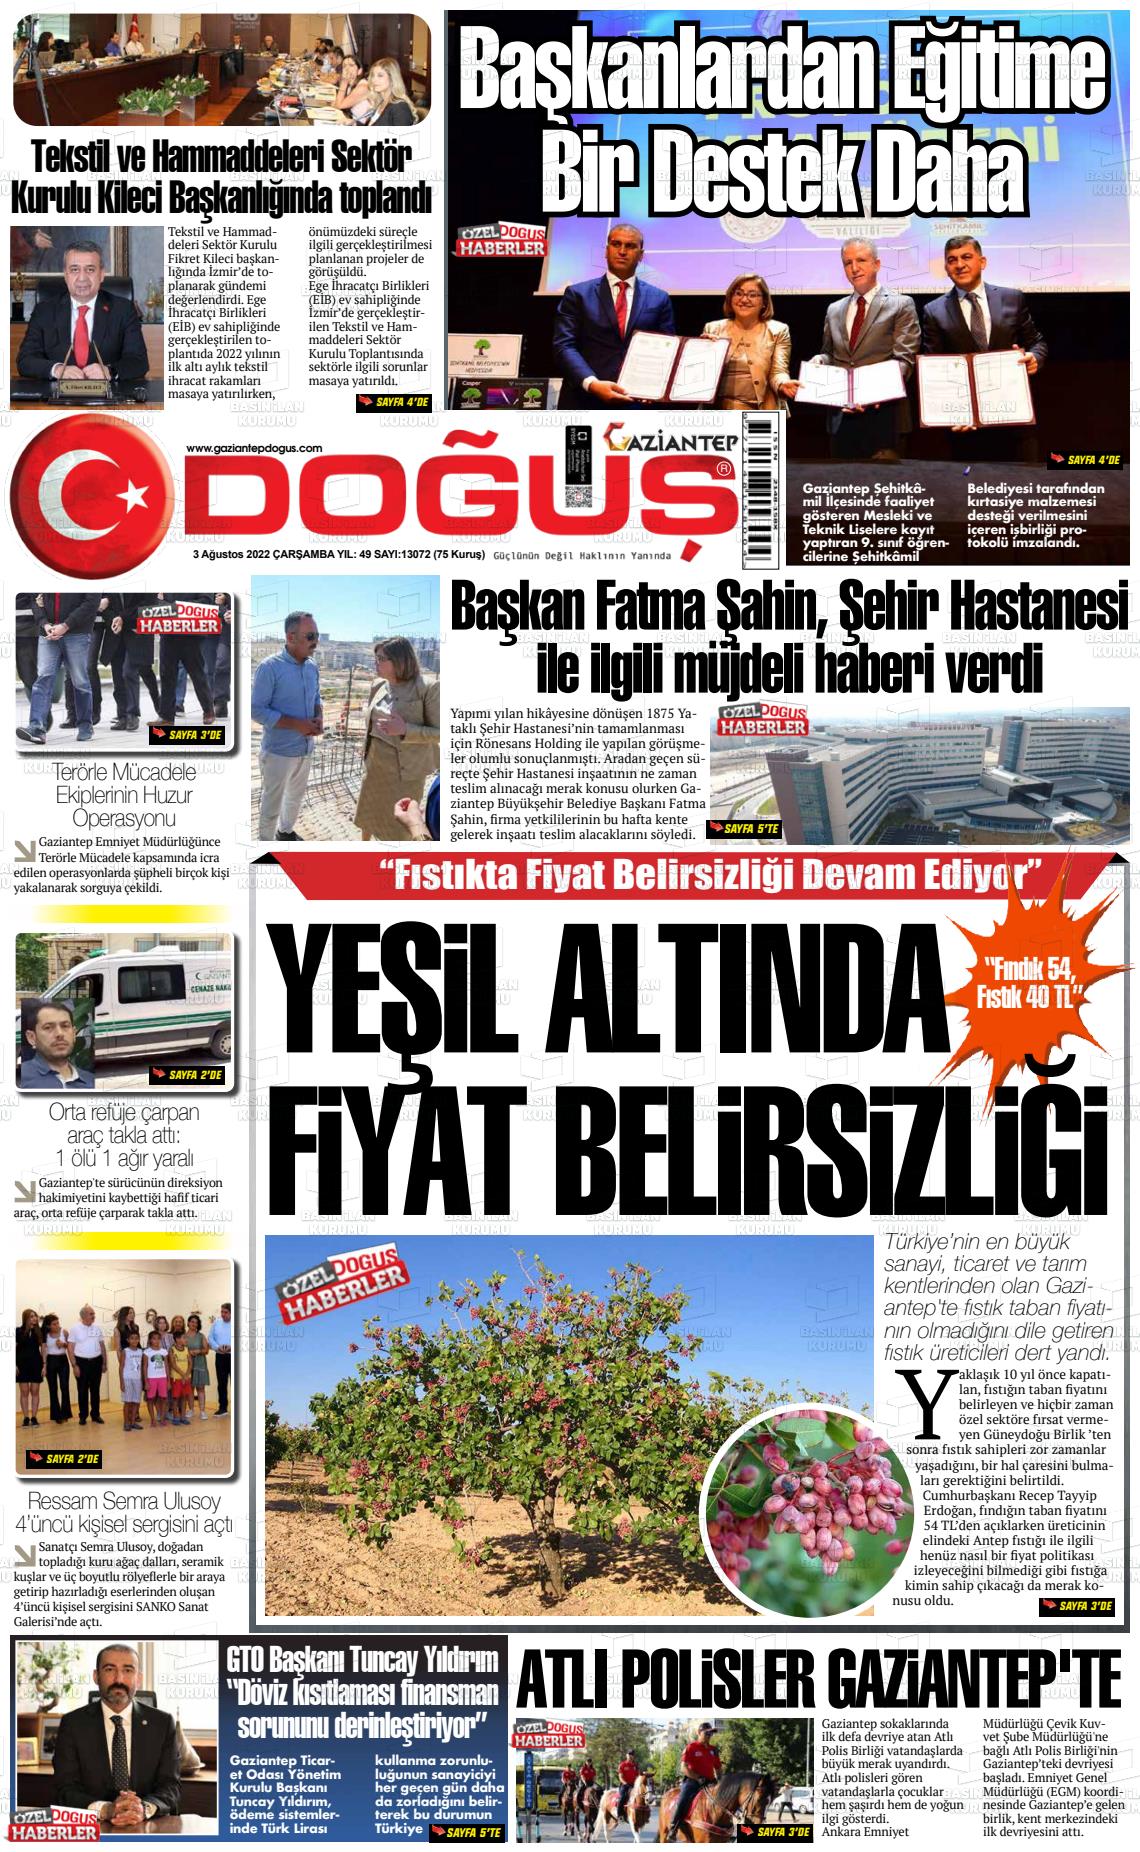 03 Ağustos 2022 Gaziantep Doğuş Gazete Manşeti